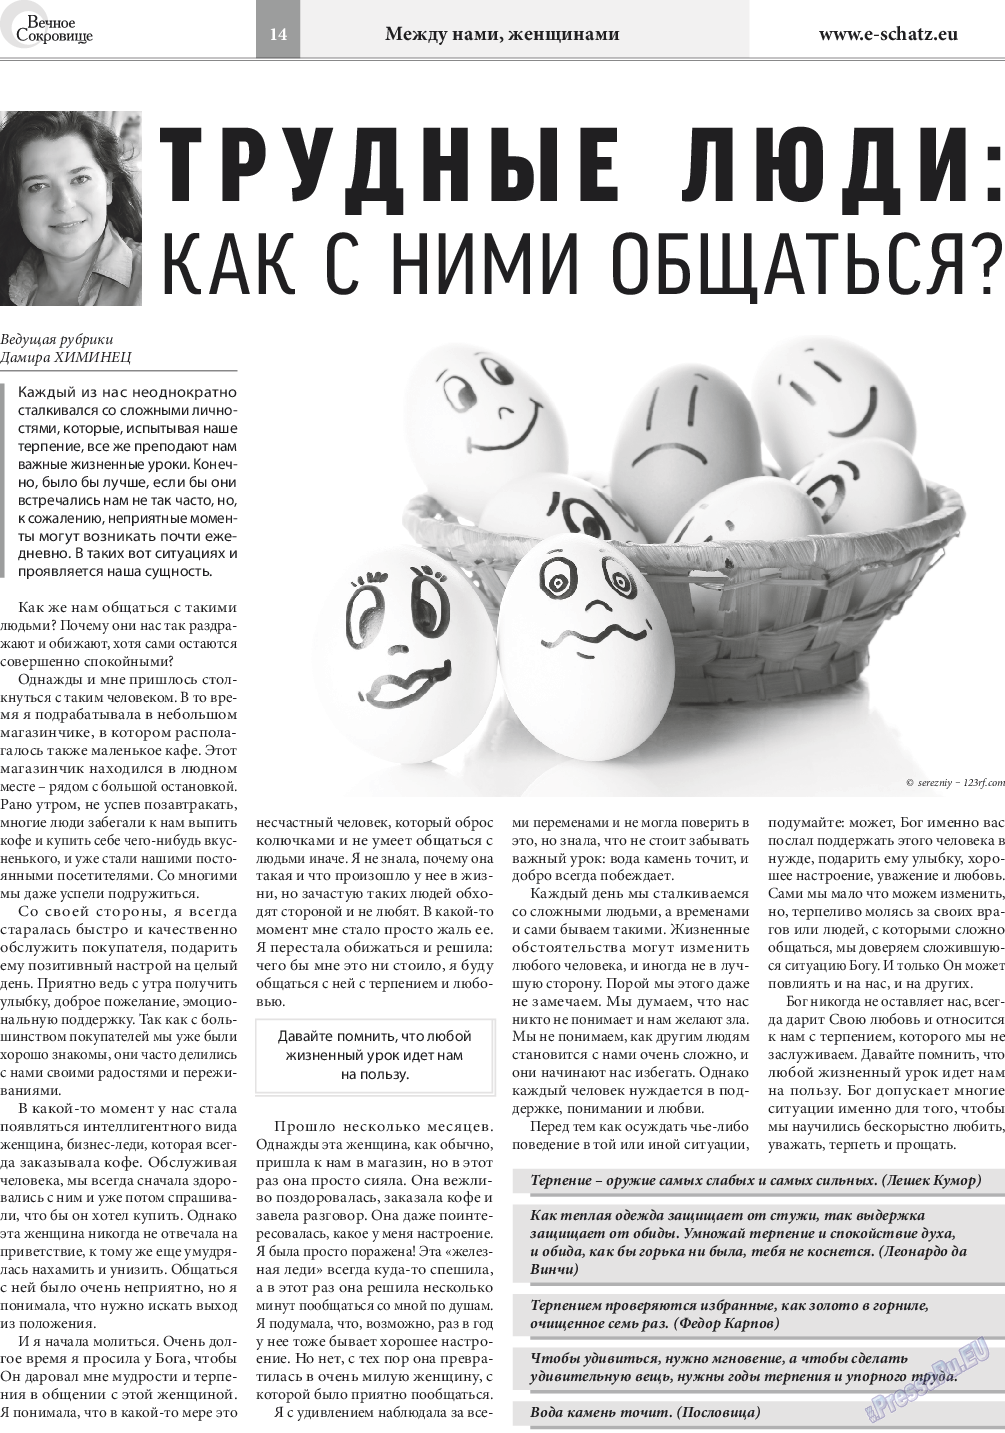 Вечное сокровище, газета. 2016 №4 стр.14